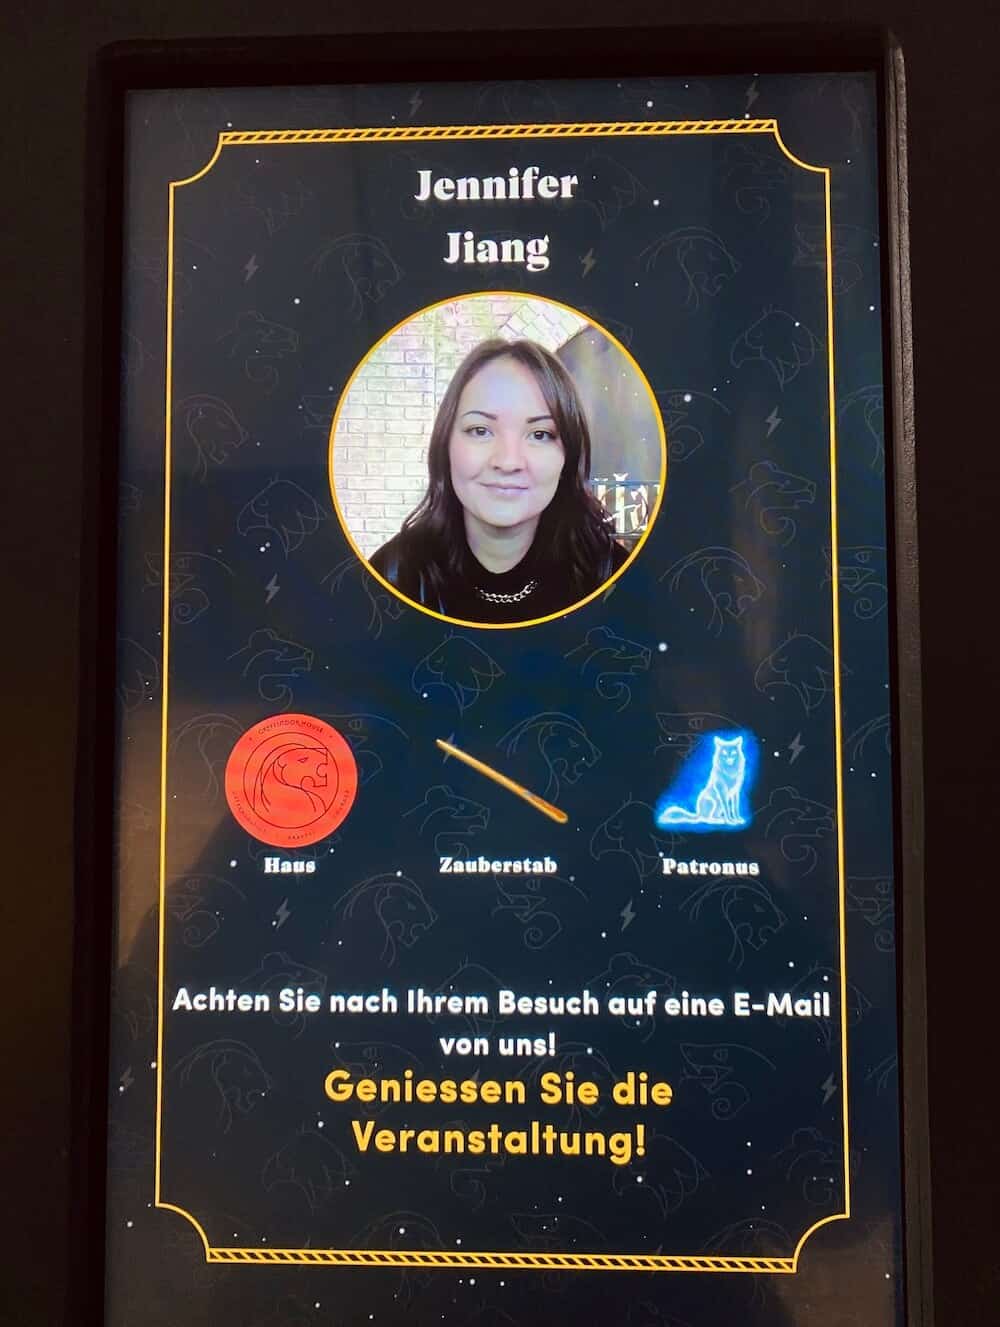 Touchscreen Bildschirm mit Profilbild und Infos zu Haus, Zauberstab und Patronus von Harry Potter Ausstellung